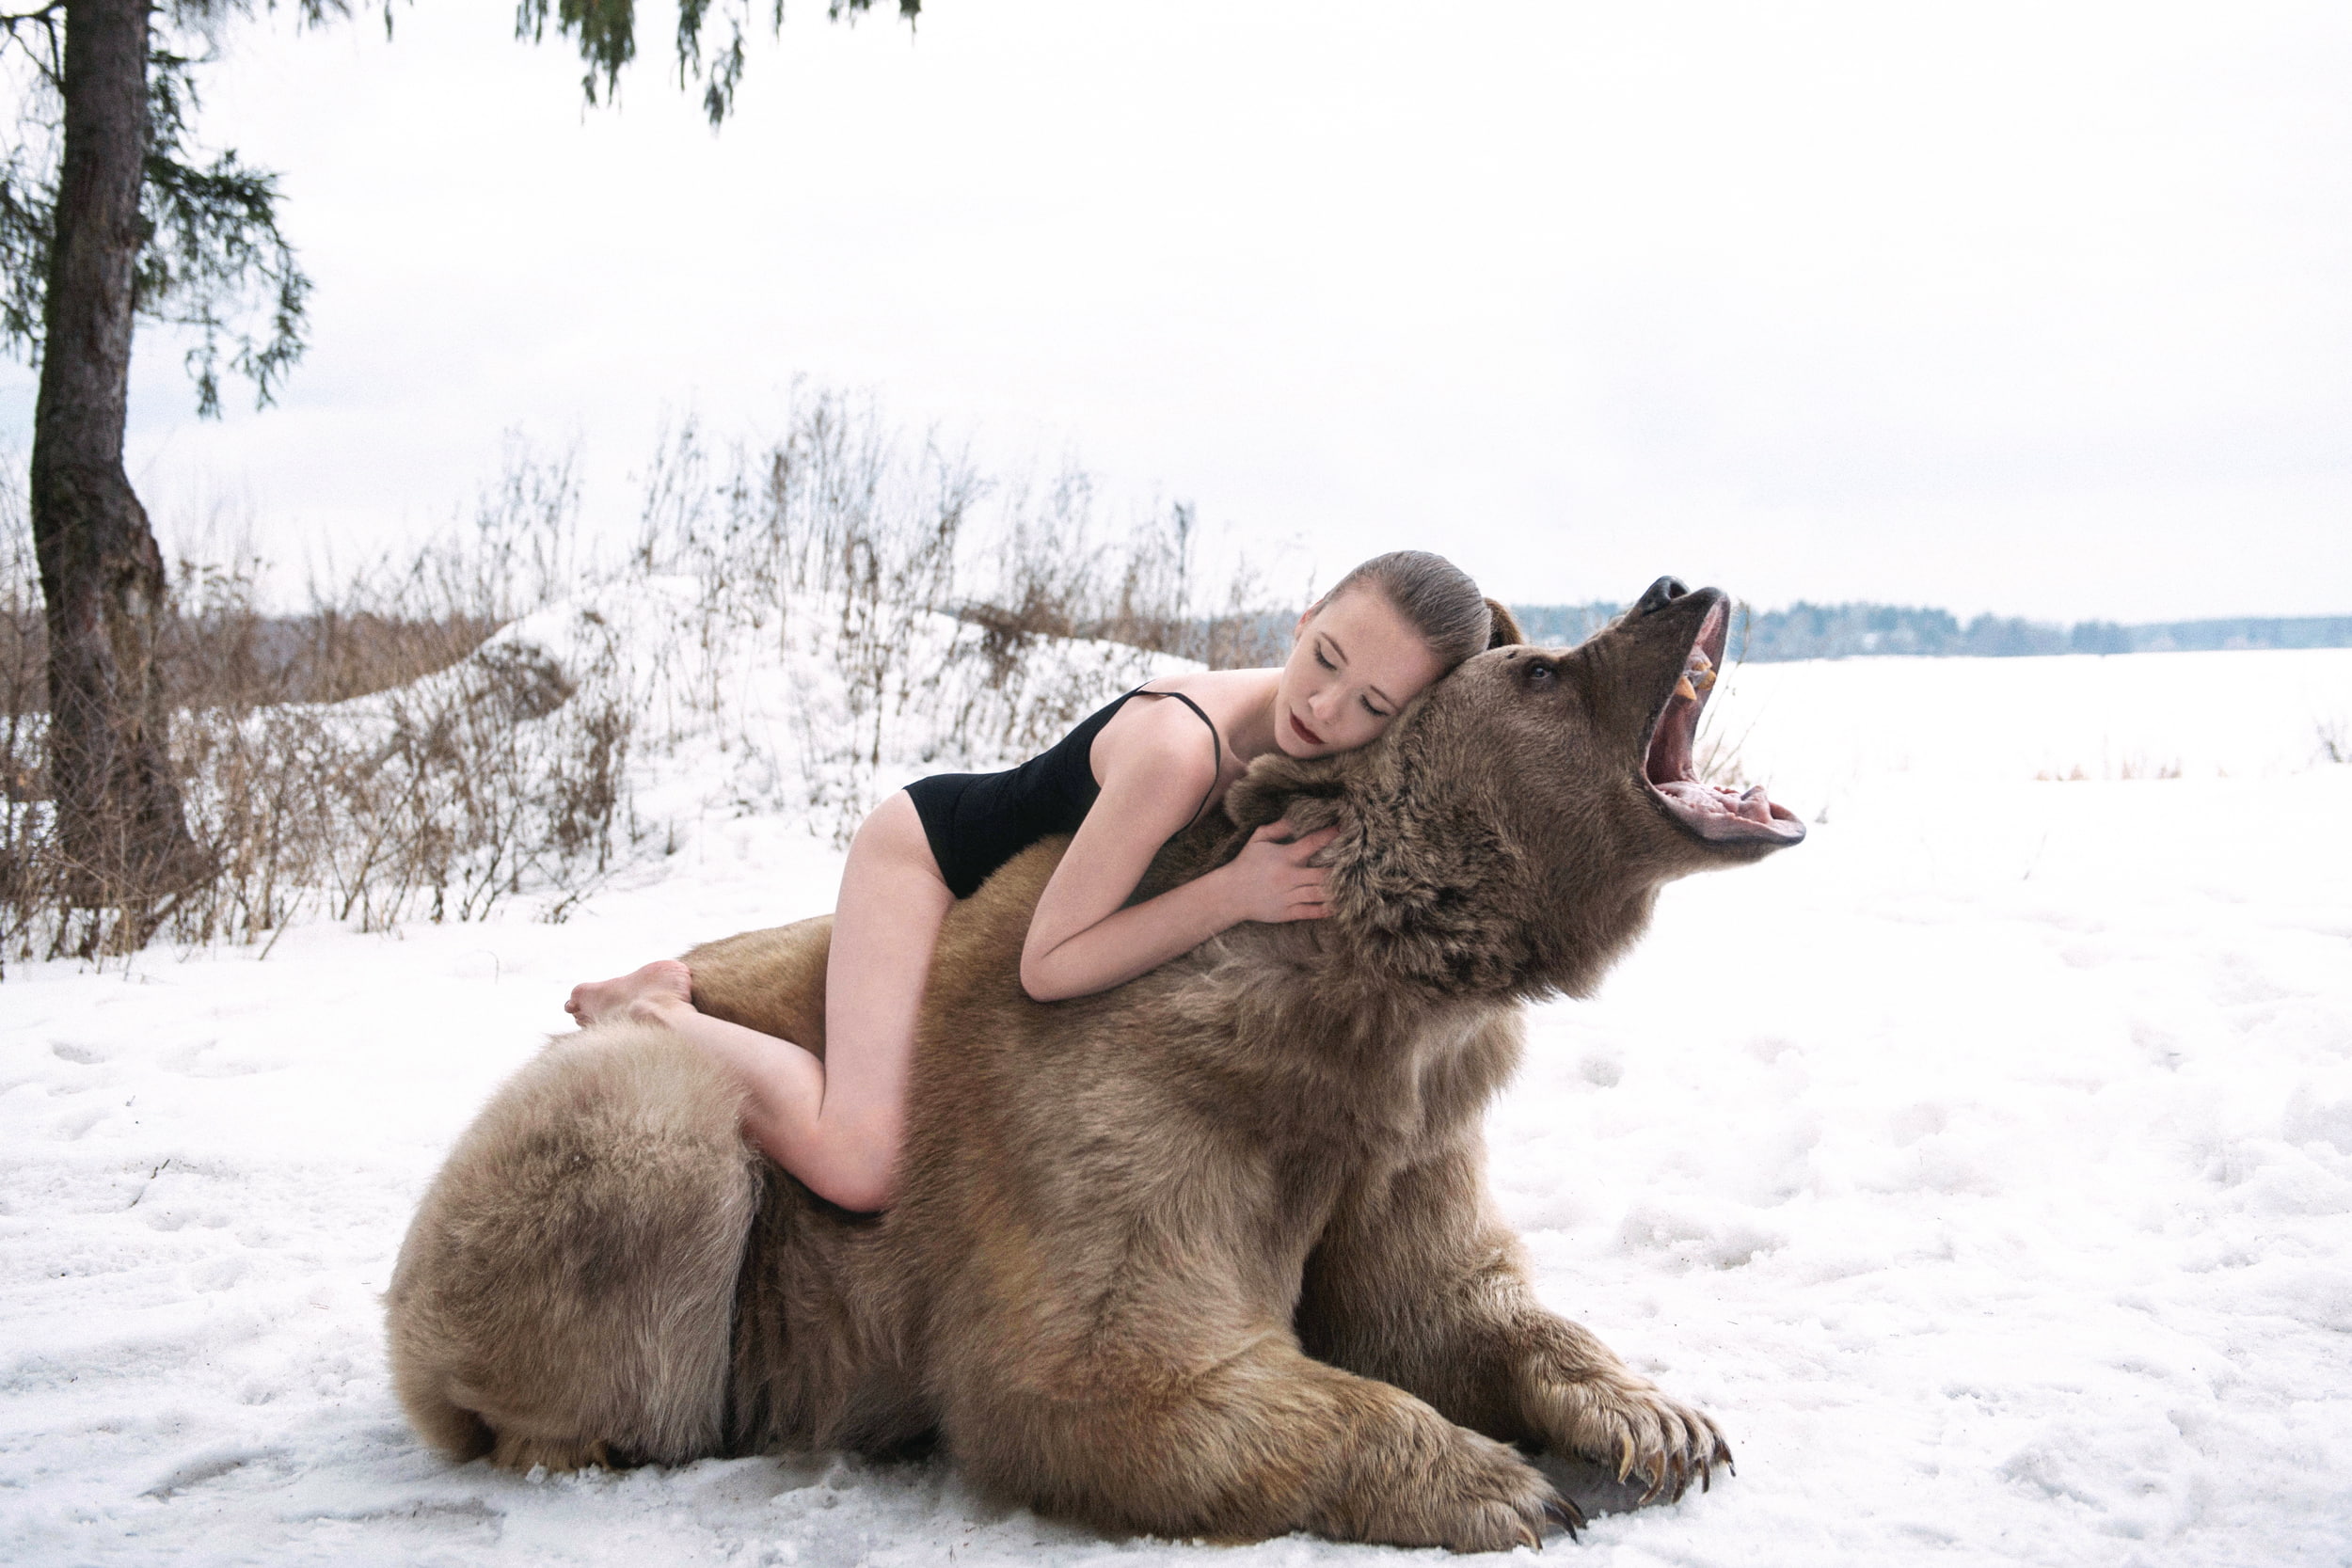 women's black monokini, winter, forest, girl, bear, roar